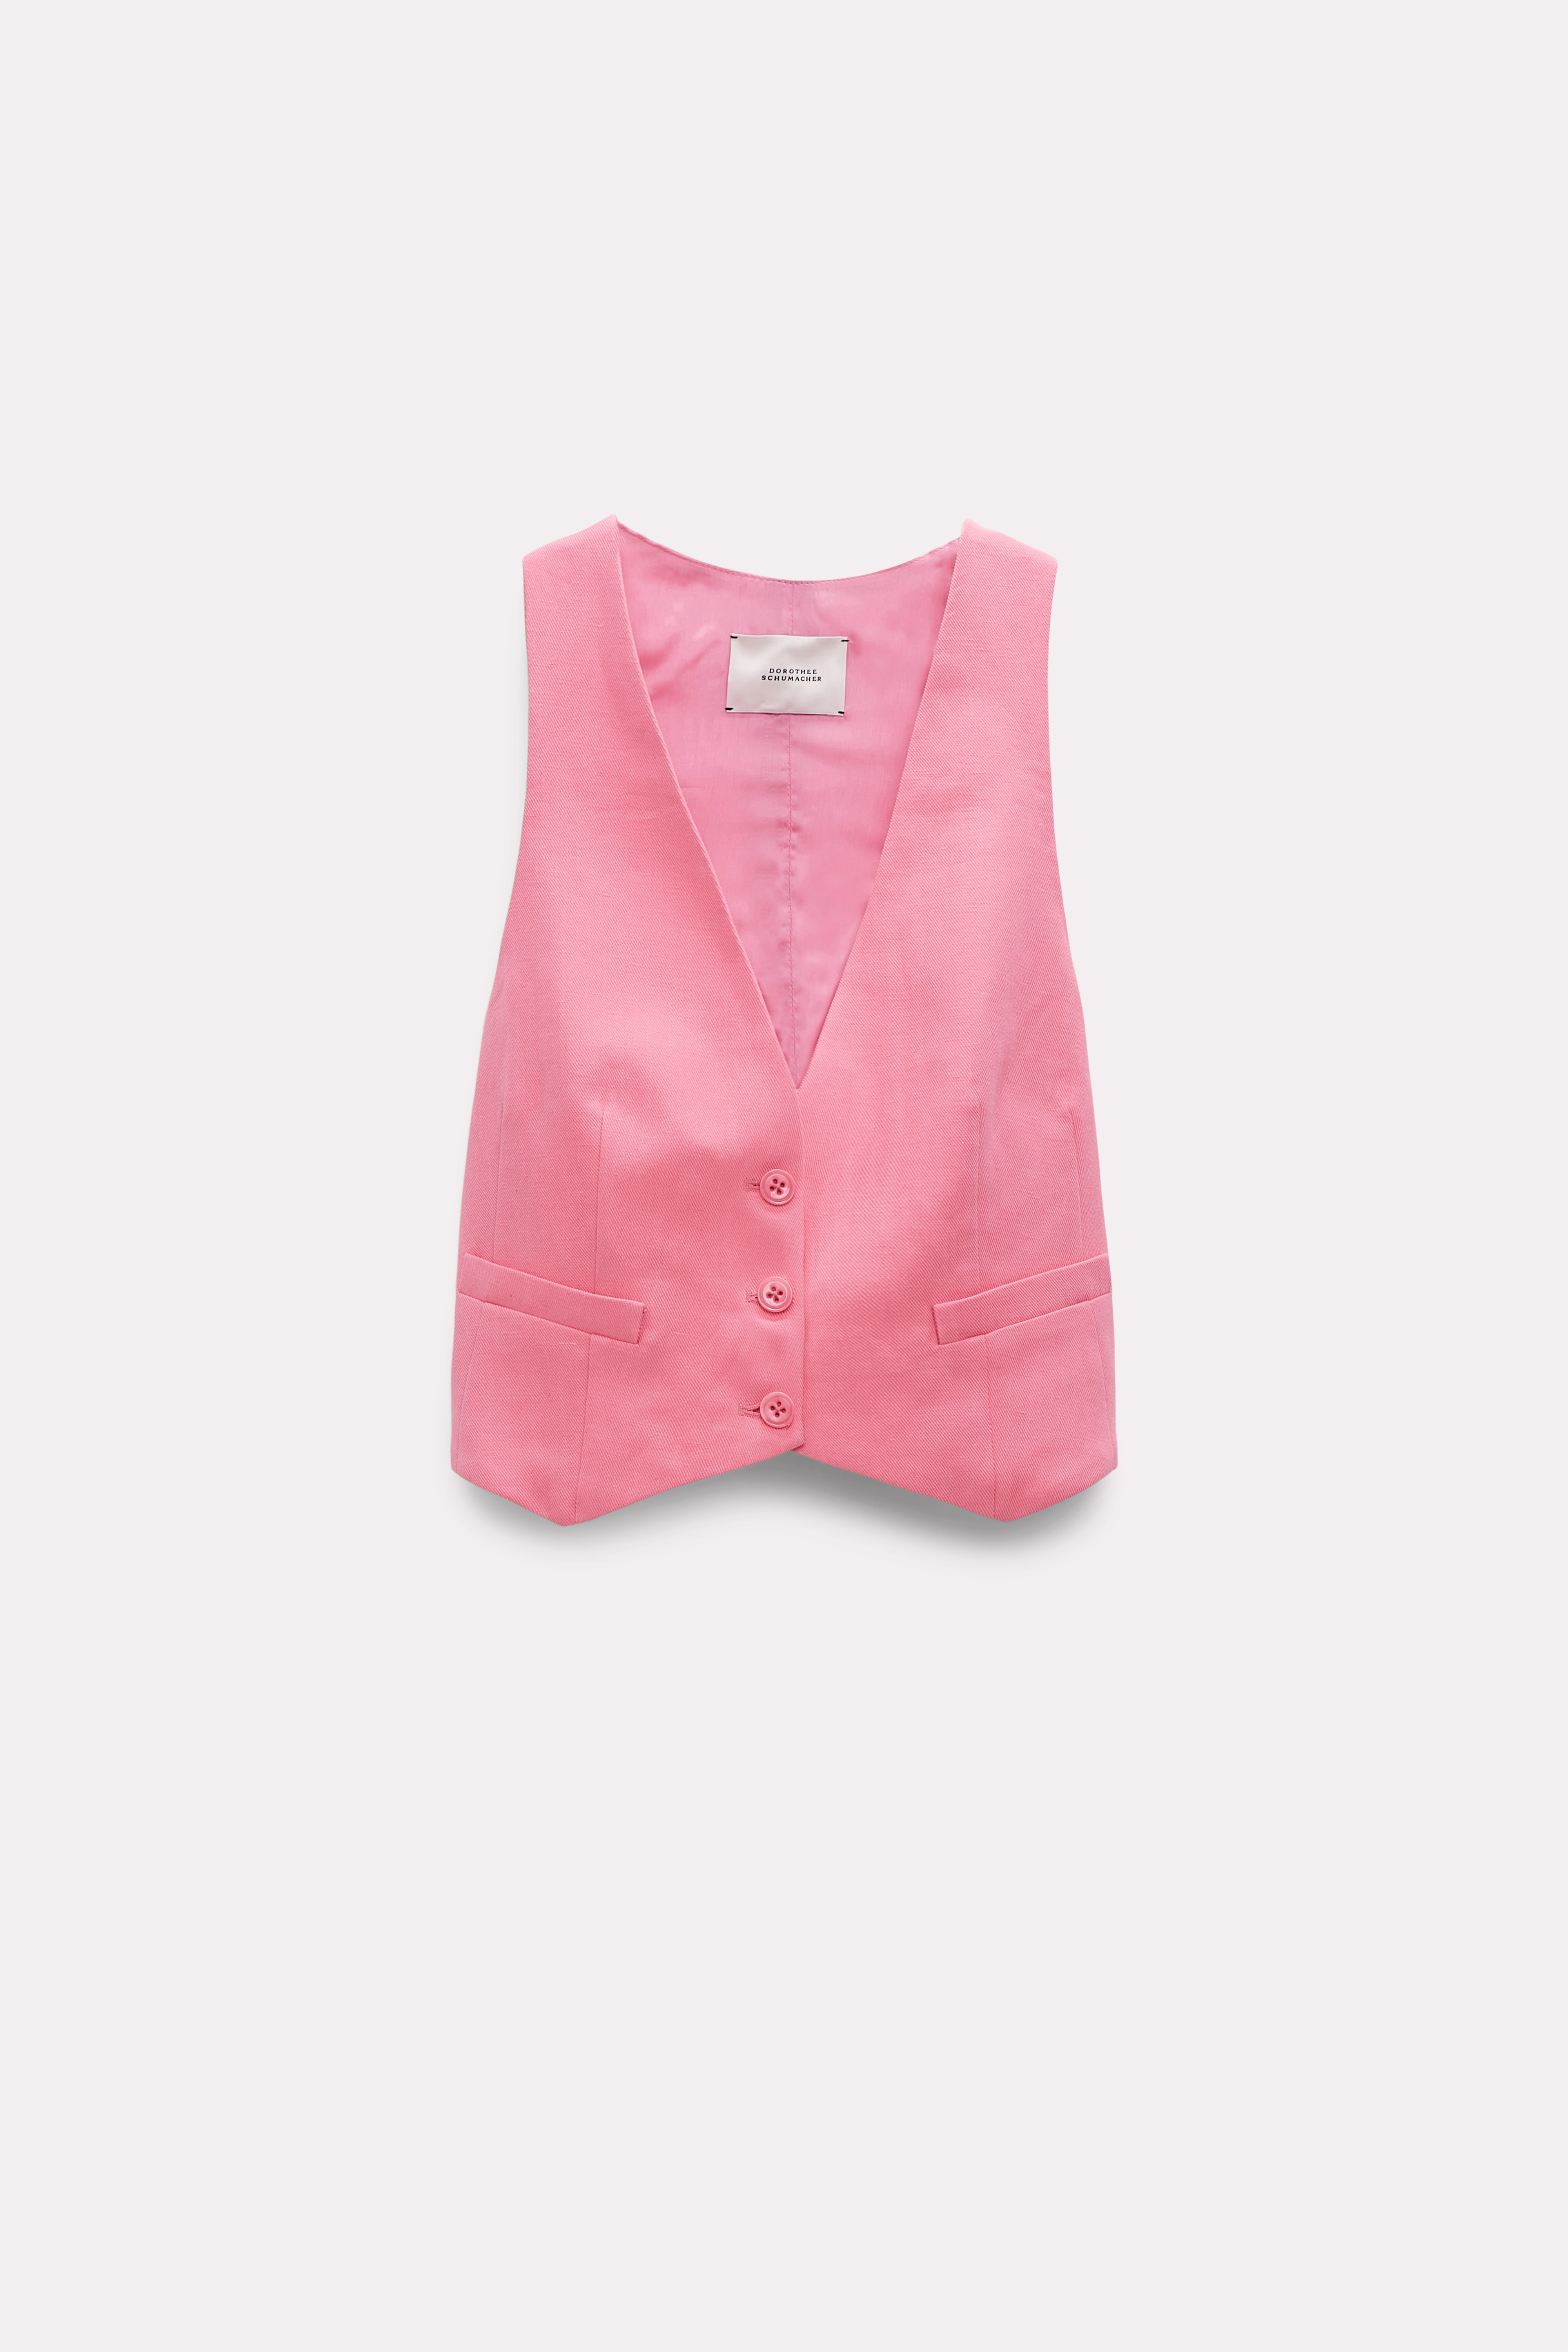 Dorothee Schumacher Lightweight Vest In Cotton-linen In Pink